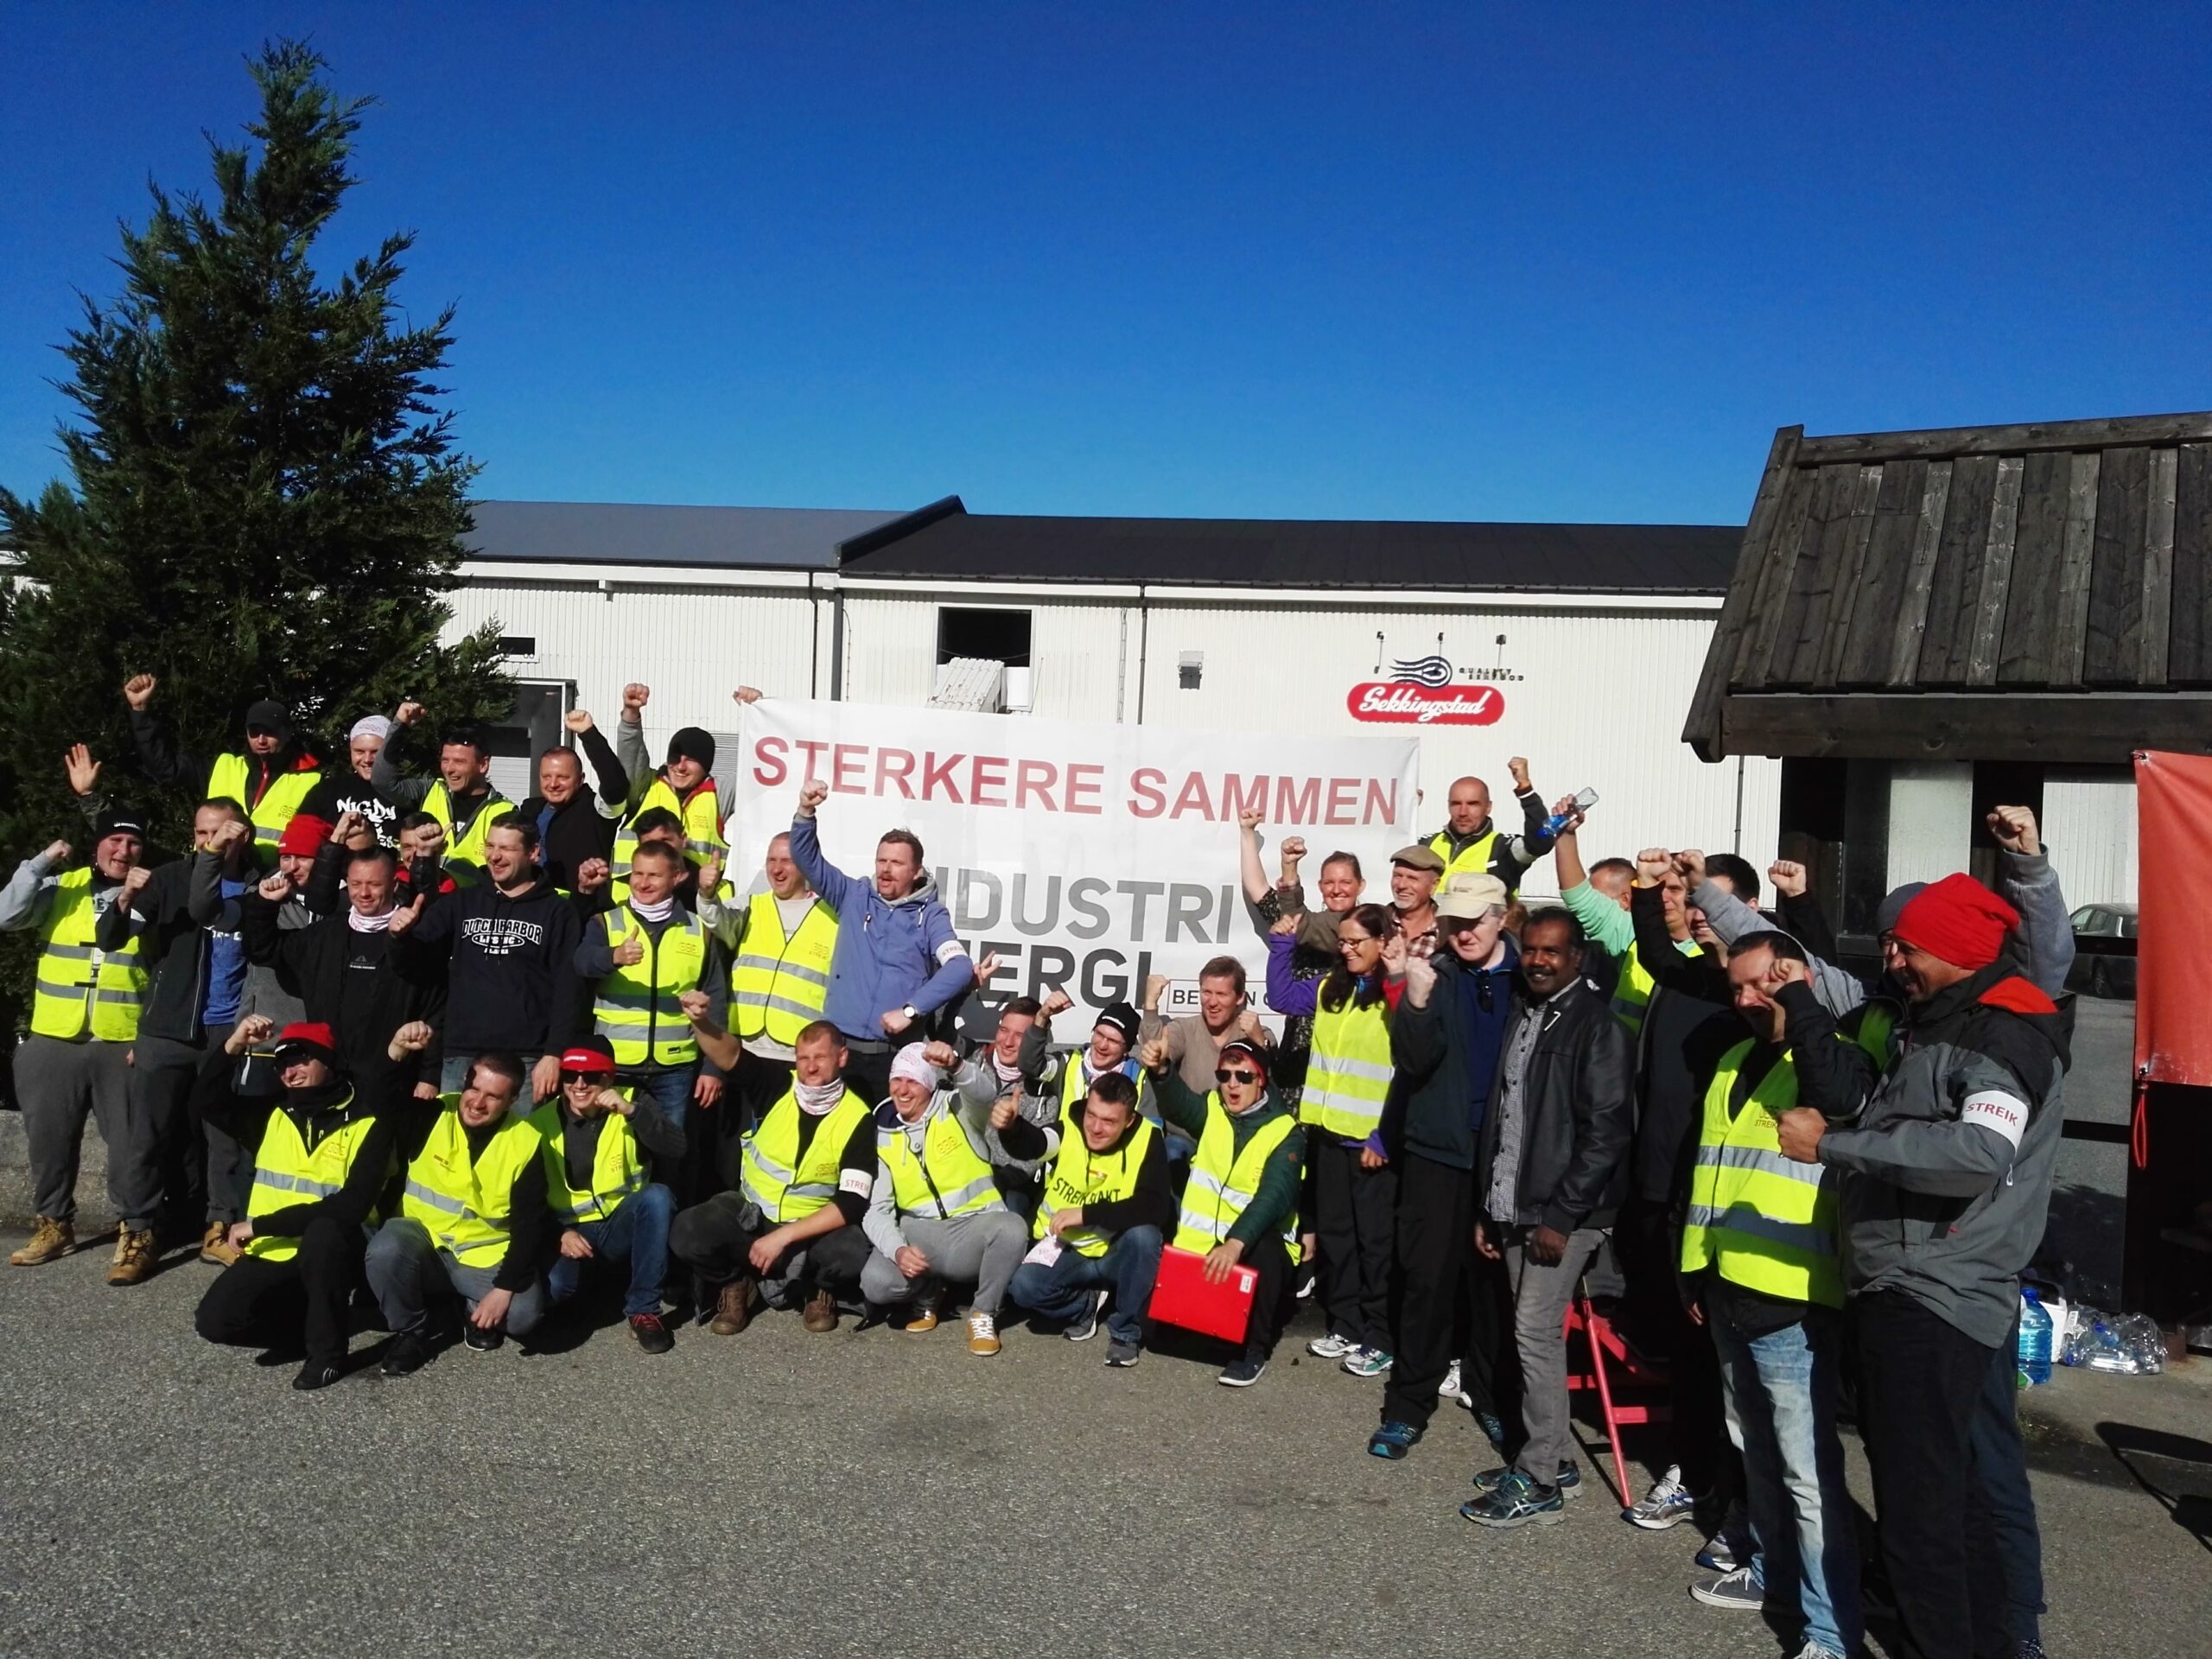 80 NNN-medlemmer ved fiskeforedlingsbedriften Norse Production på Sotra streiker for retten til tariffavtalte og anstendige lønns- og arbeidsvilkår.